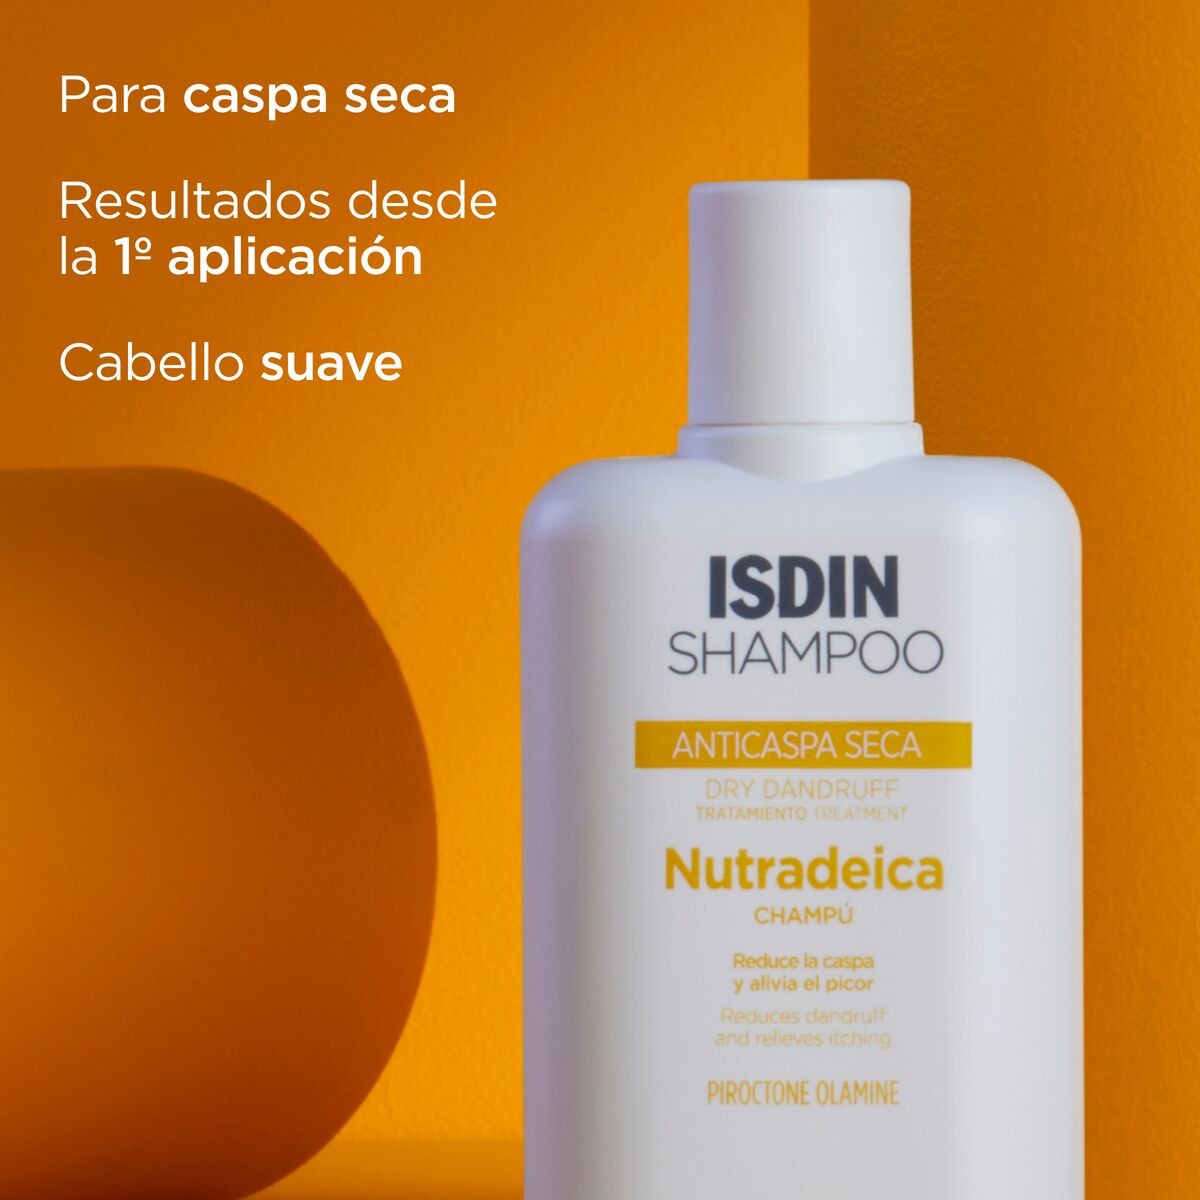 Shampoo Nutradeica Anticaspa Seca -  Reduce la caspa seca y alivia el picor